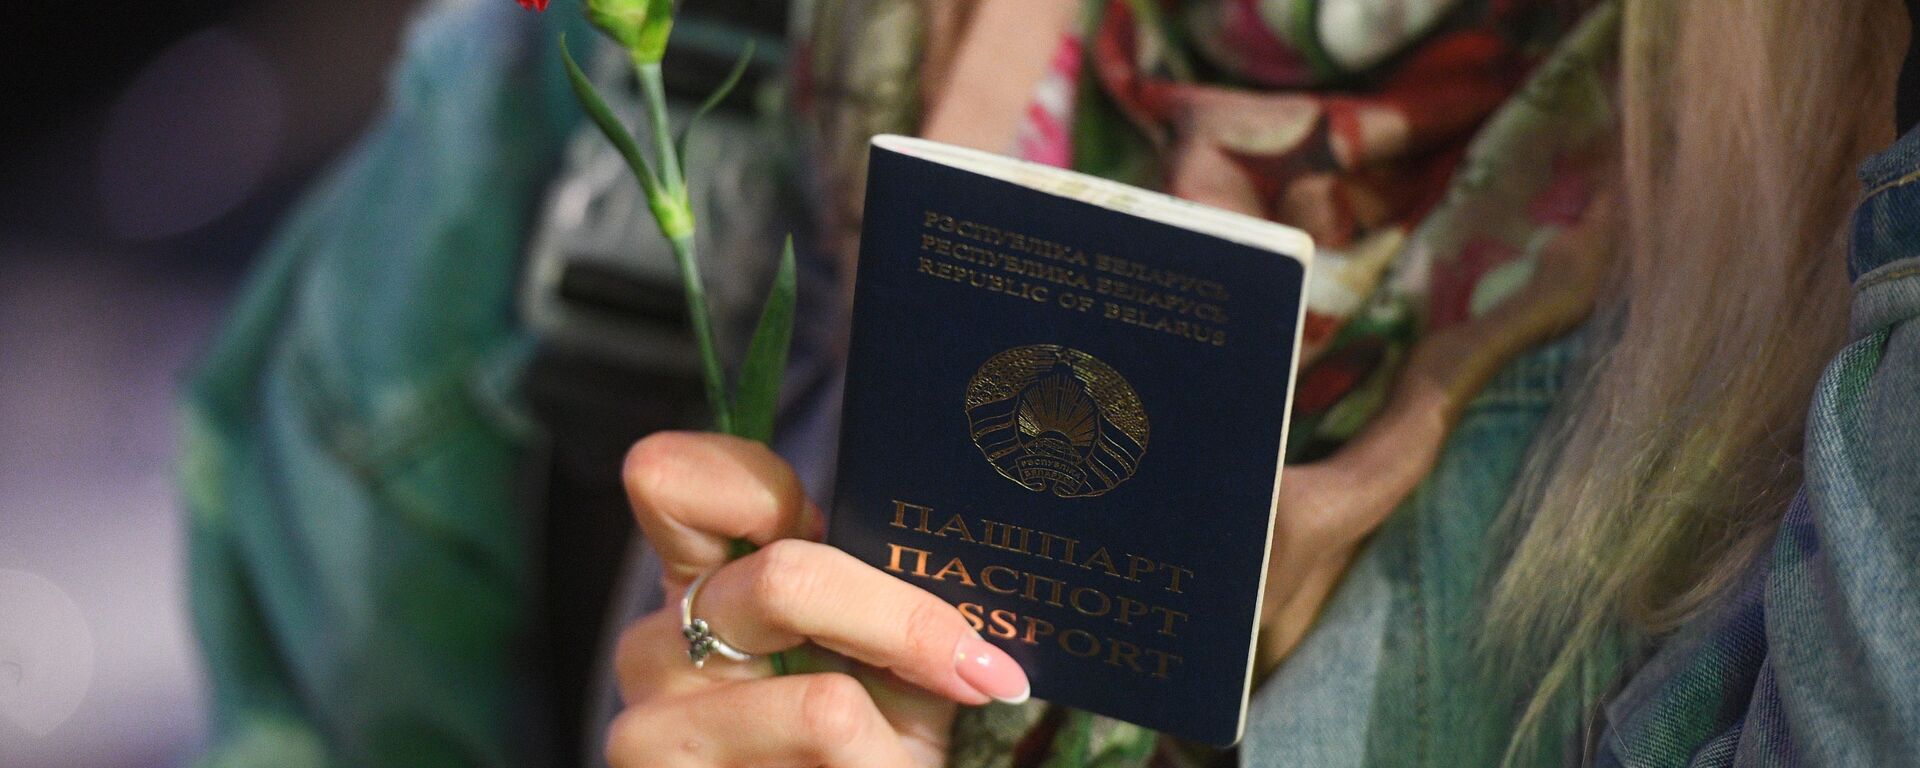 Паспорт гражданина Белоруссии - Sputnik Латвия, 1920, 06.04.2021